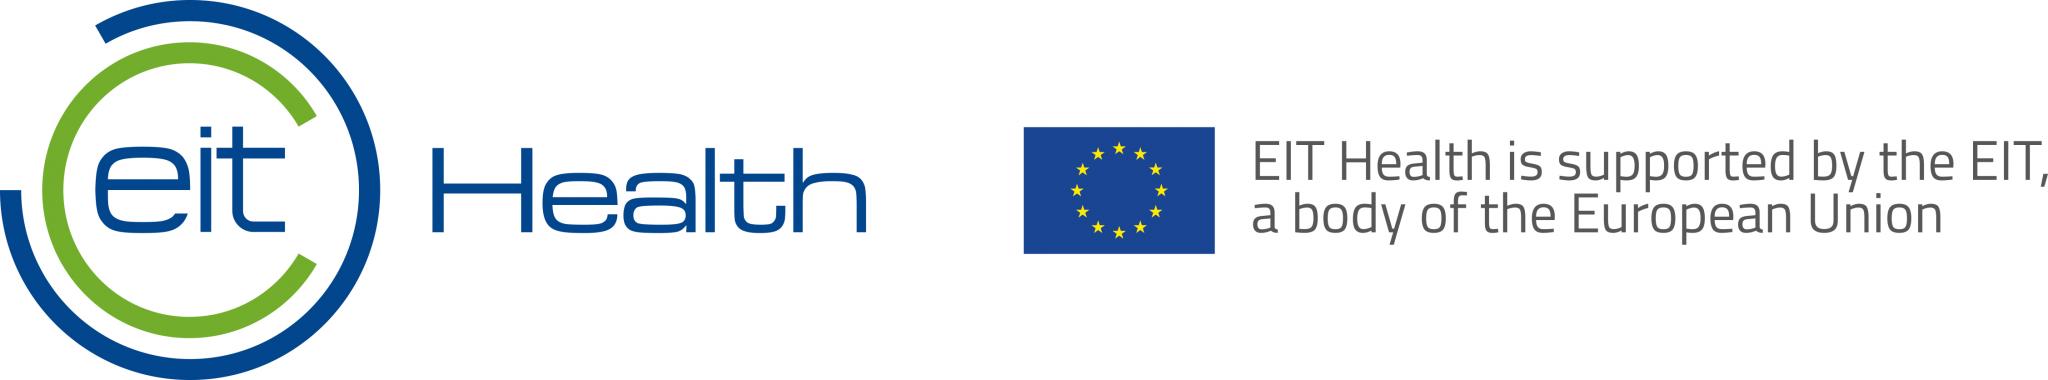 eitH_EU_logo.jpg